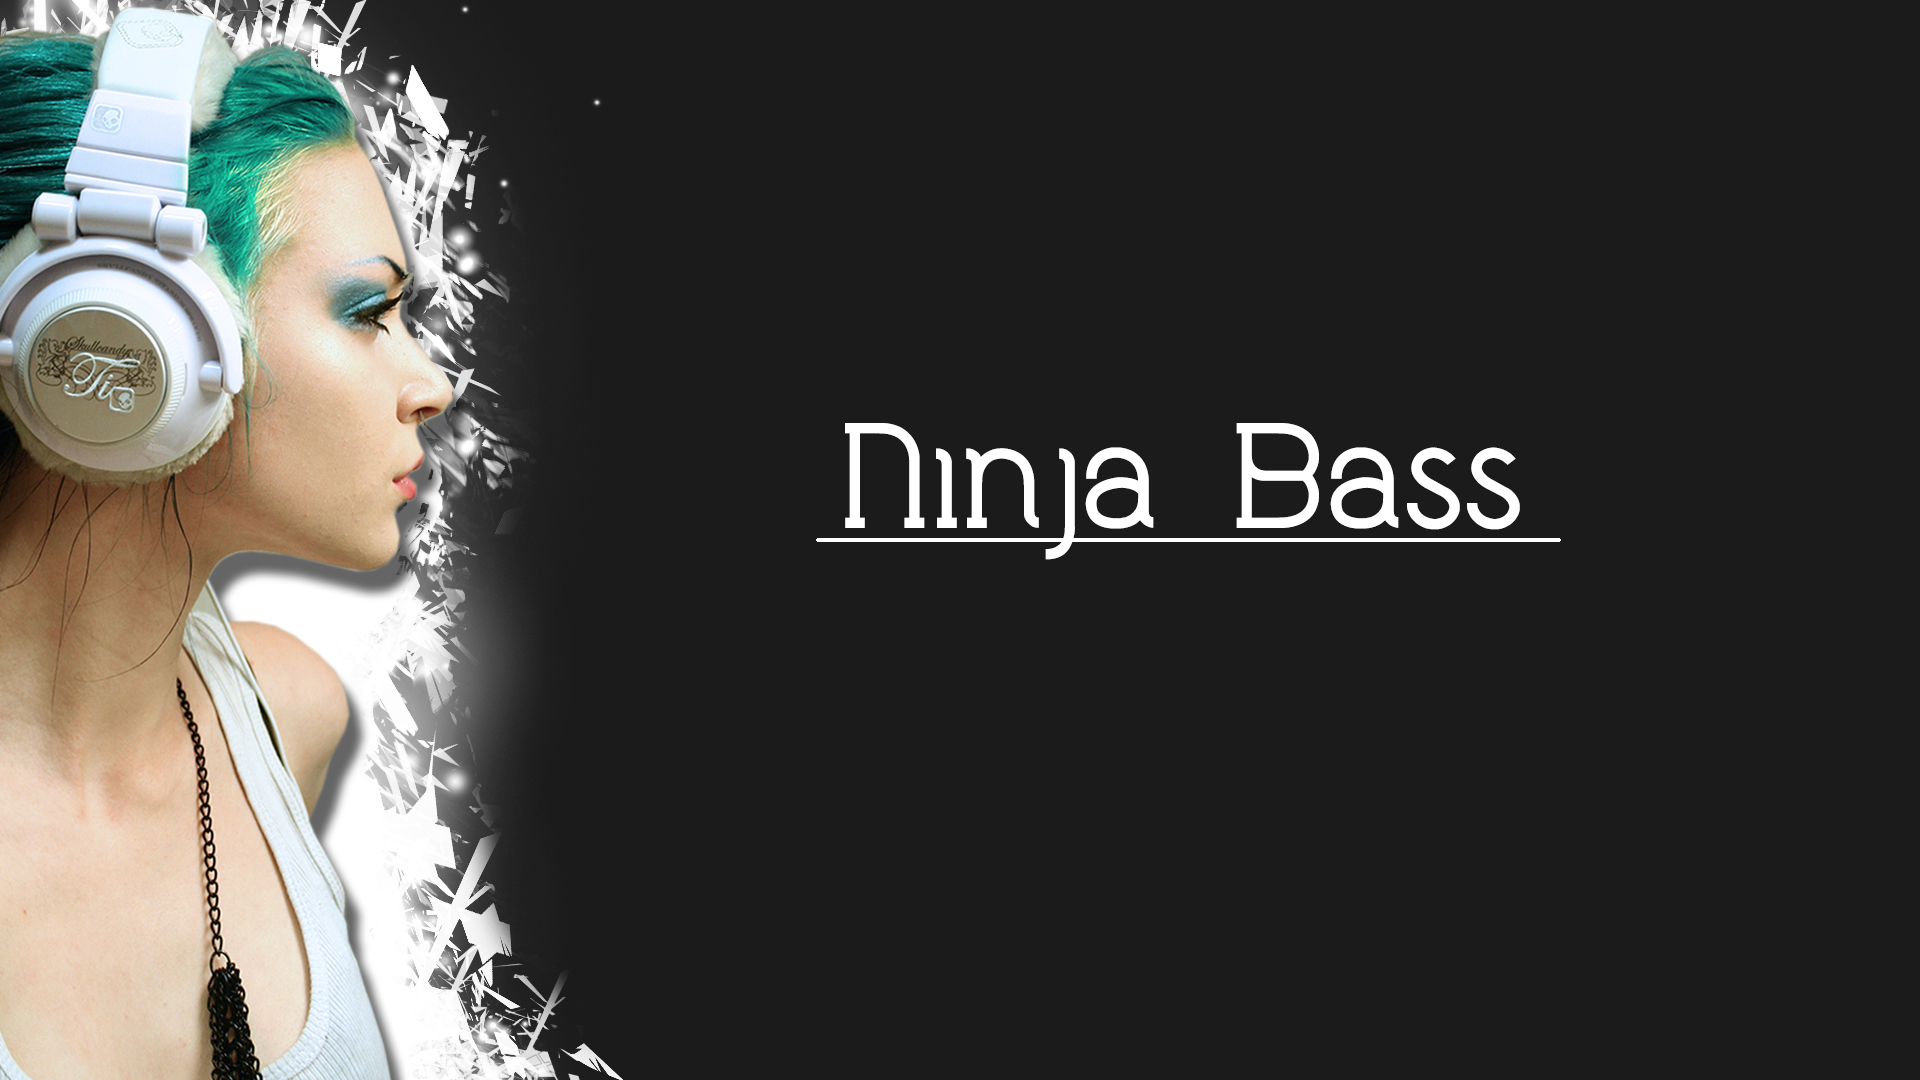 Design Ninja Ninja Bass Saiverx Saiverxdesigns 1920x1080